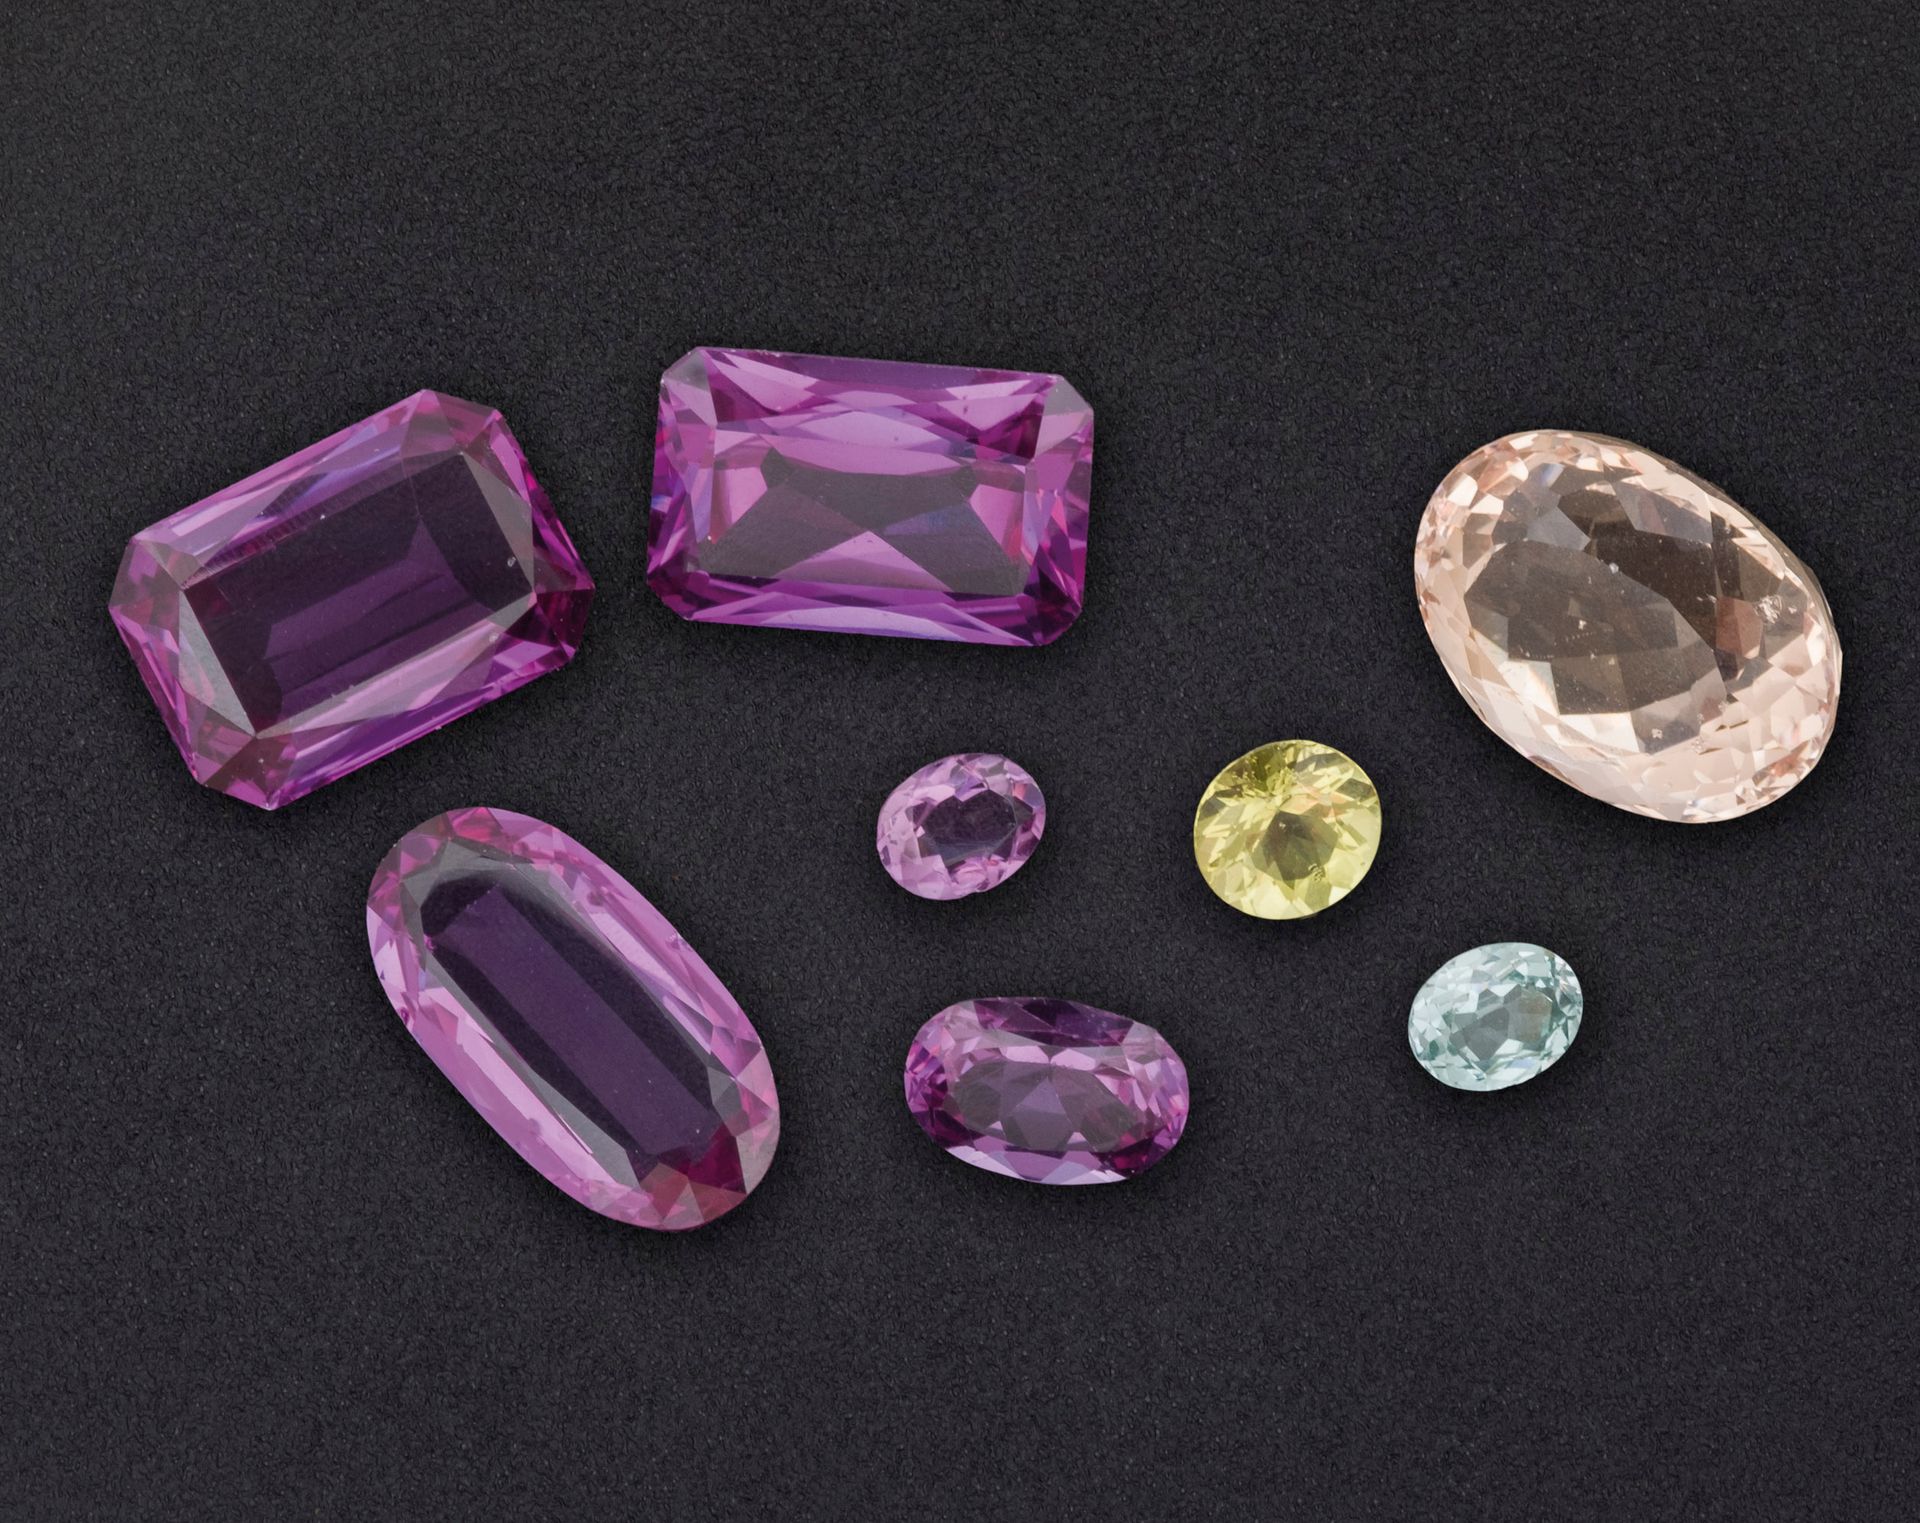 Null 一批各种未镶嵌的宝石，包括一颗59克拉的摩根石绿宝石。